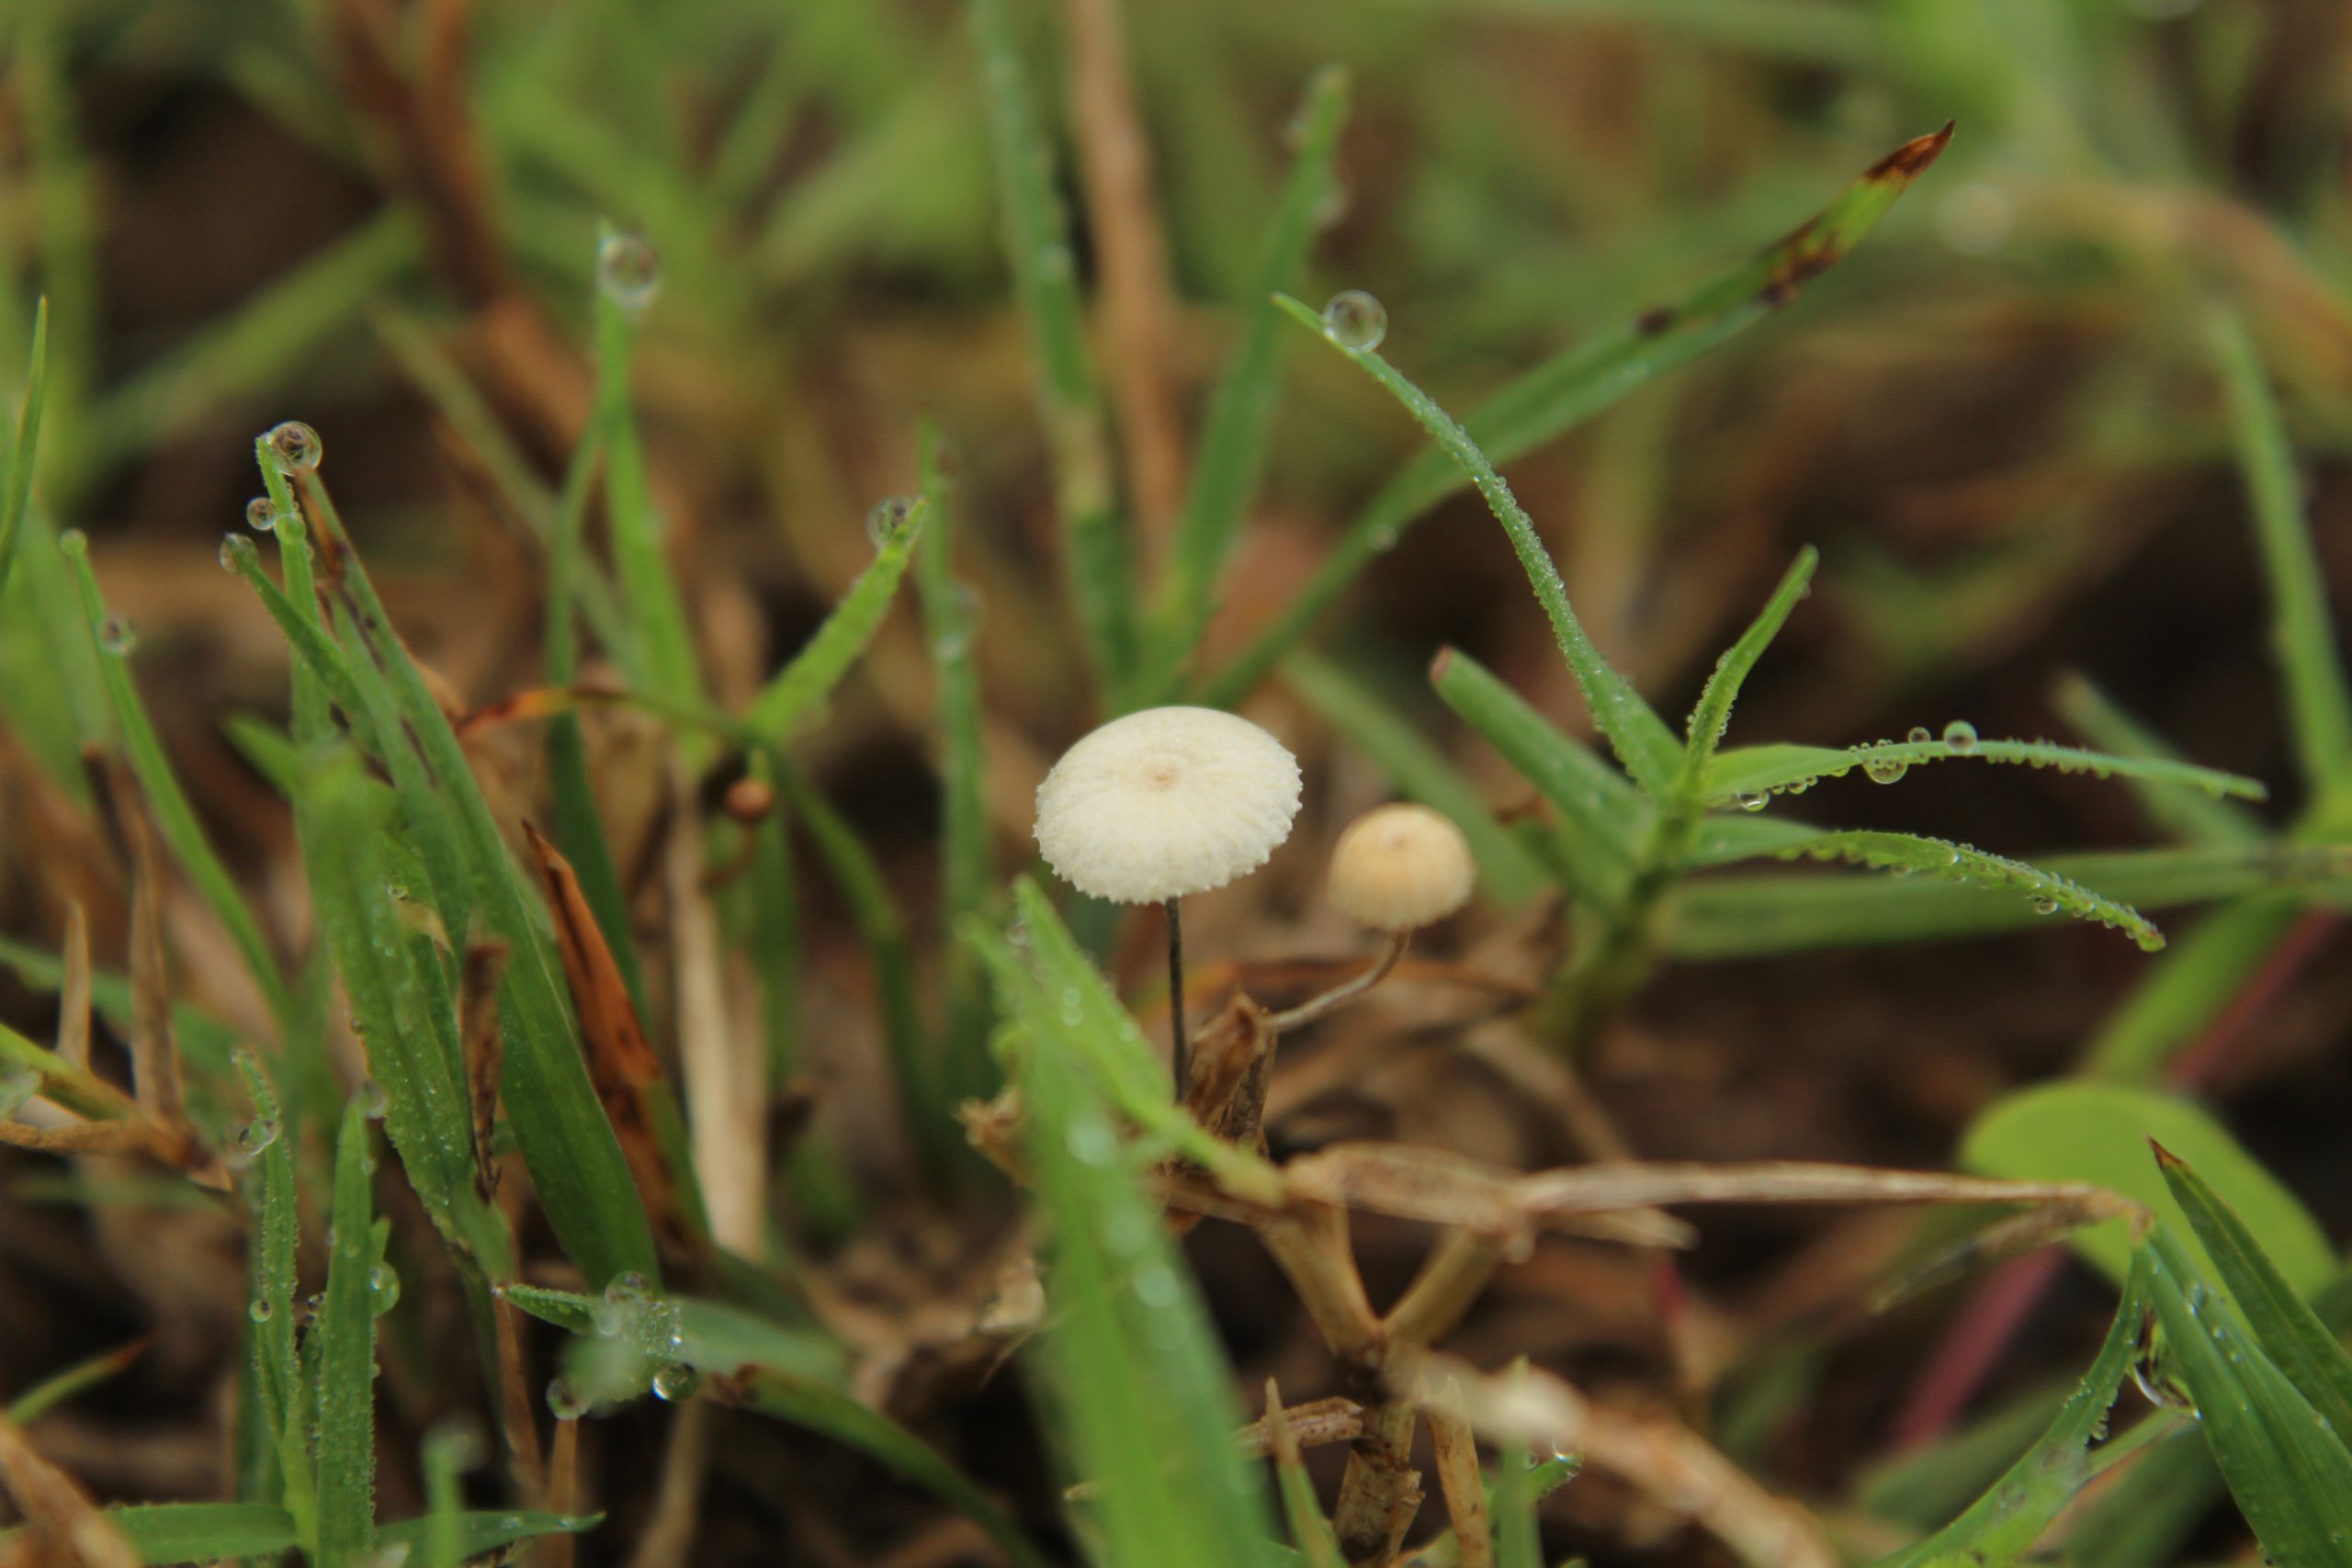 Fungi growing in grass